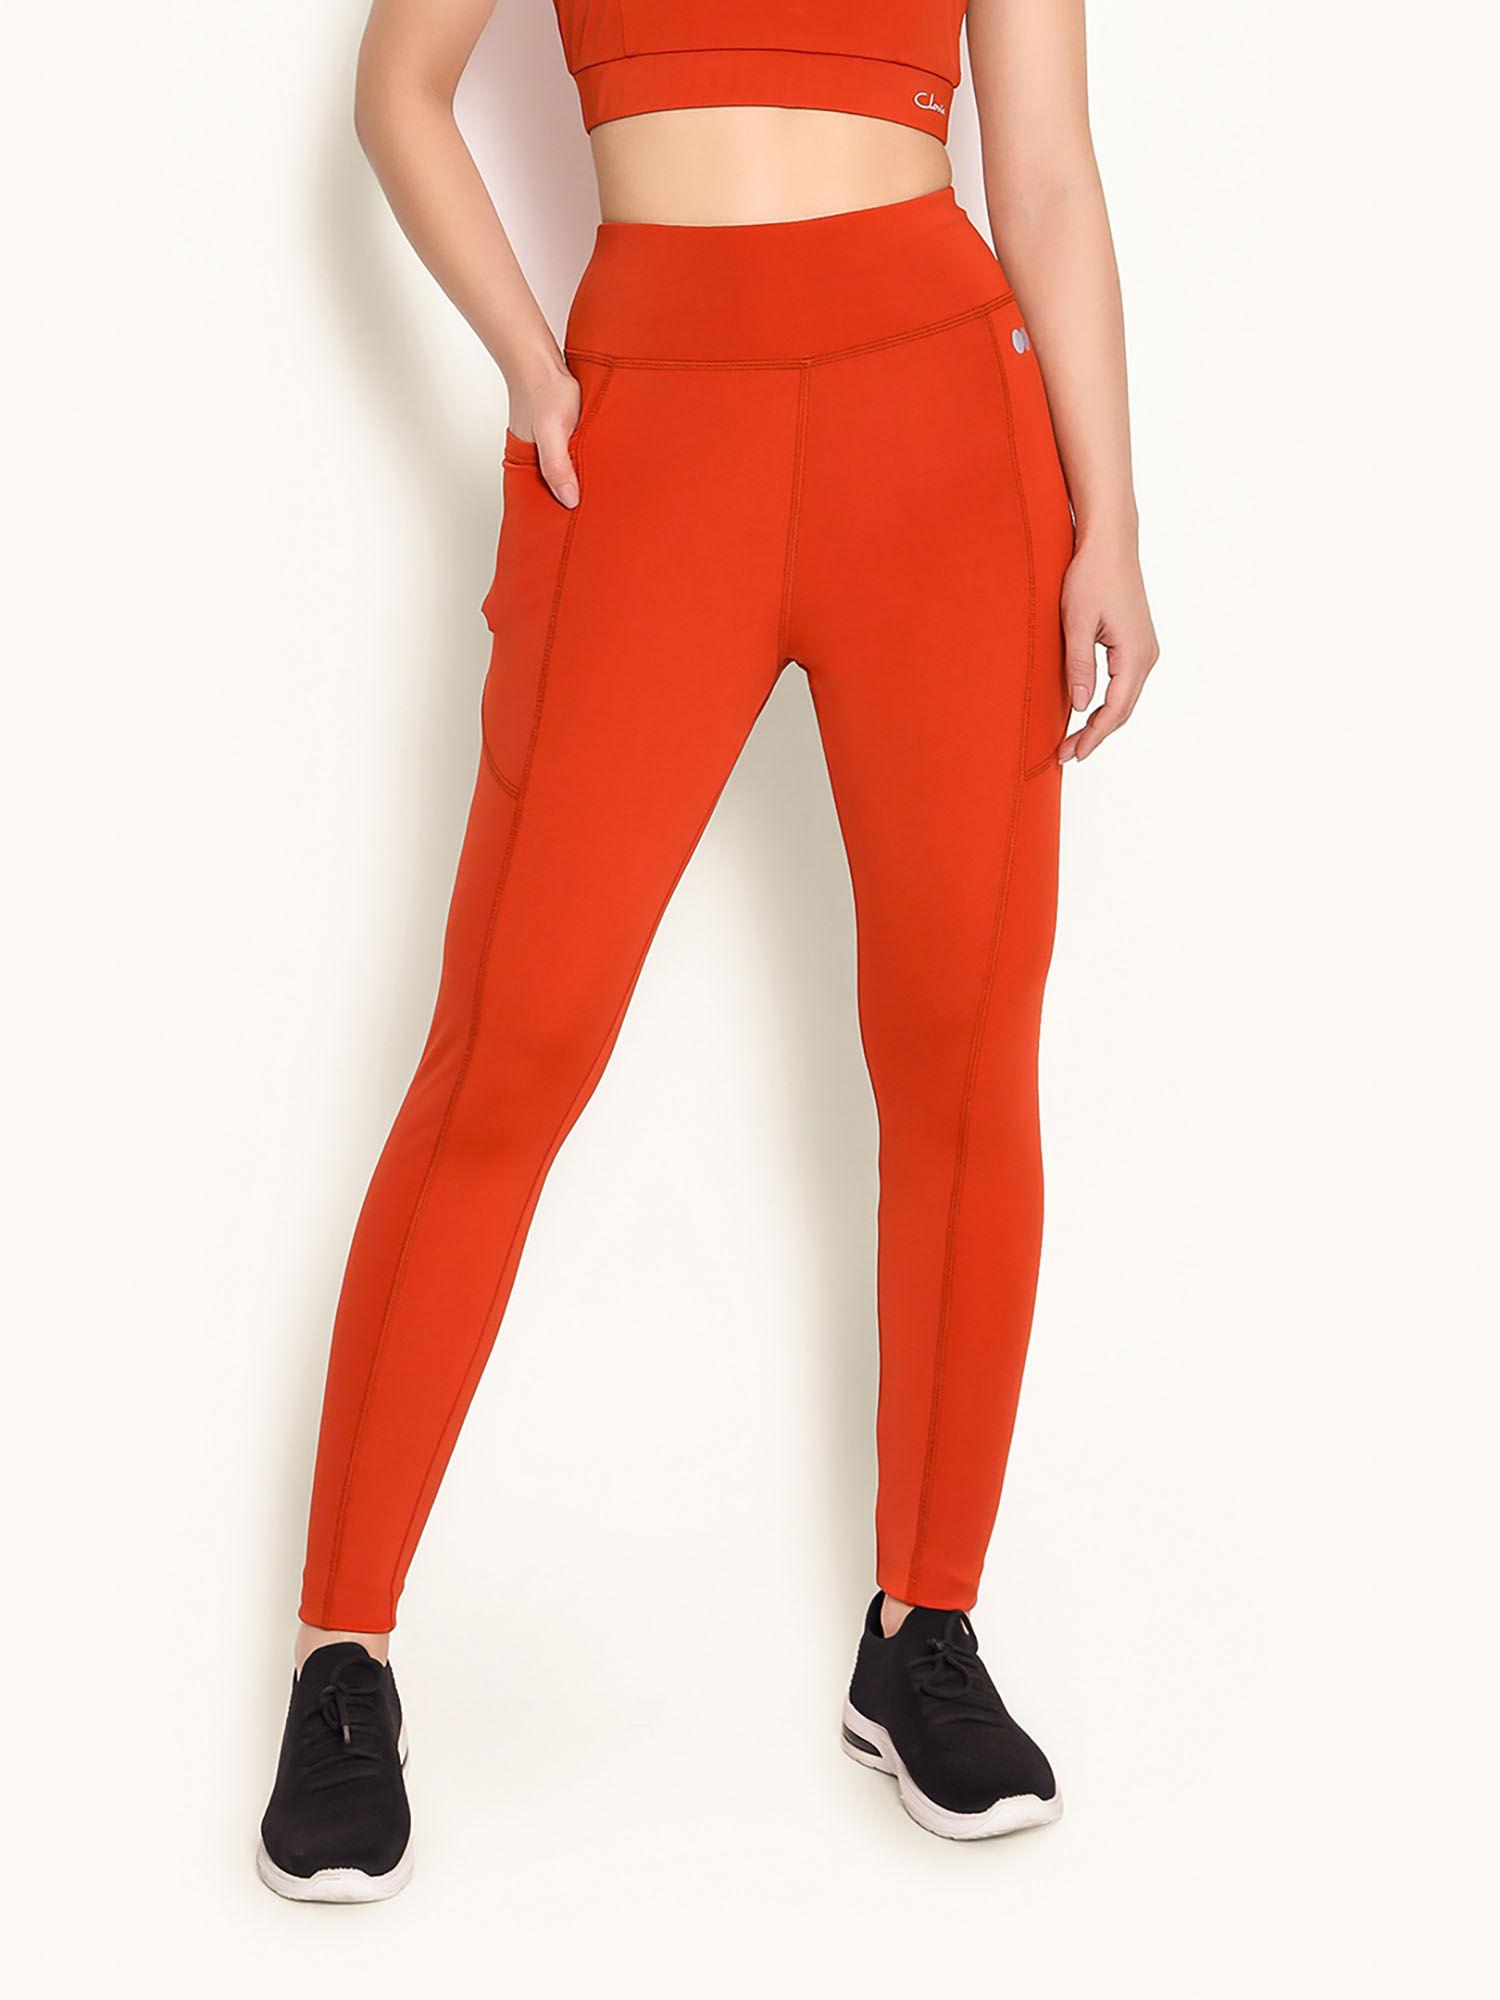 high-rise active orange side pocket tights